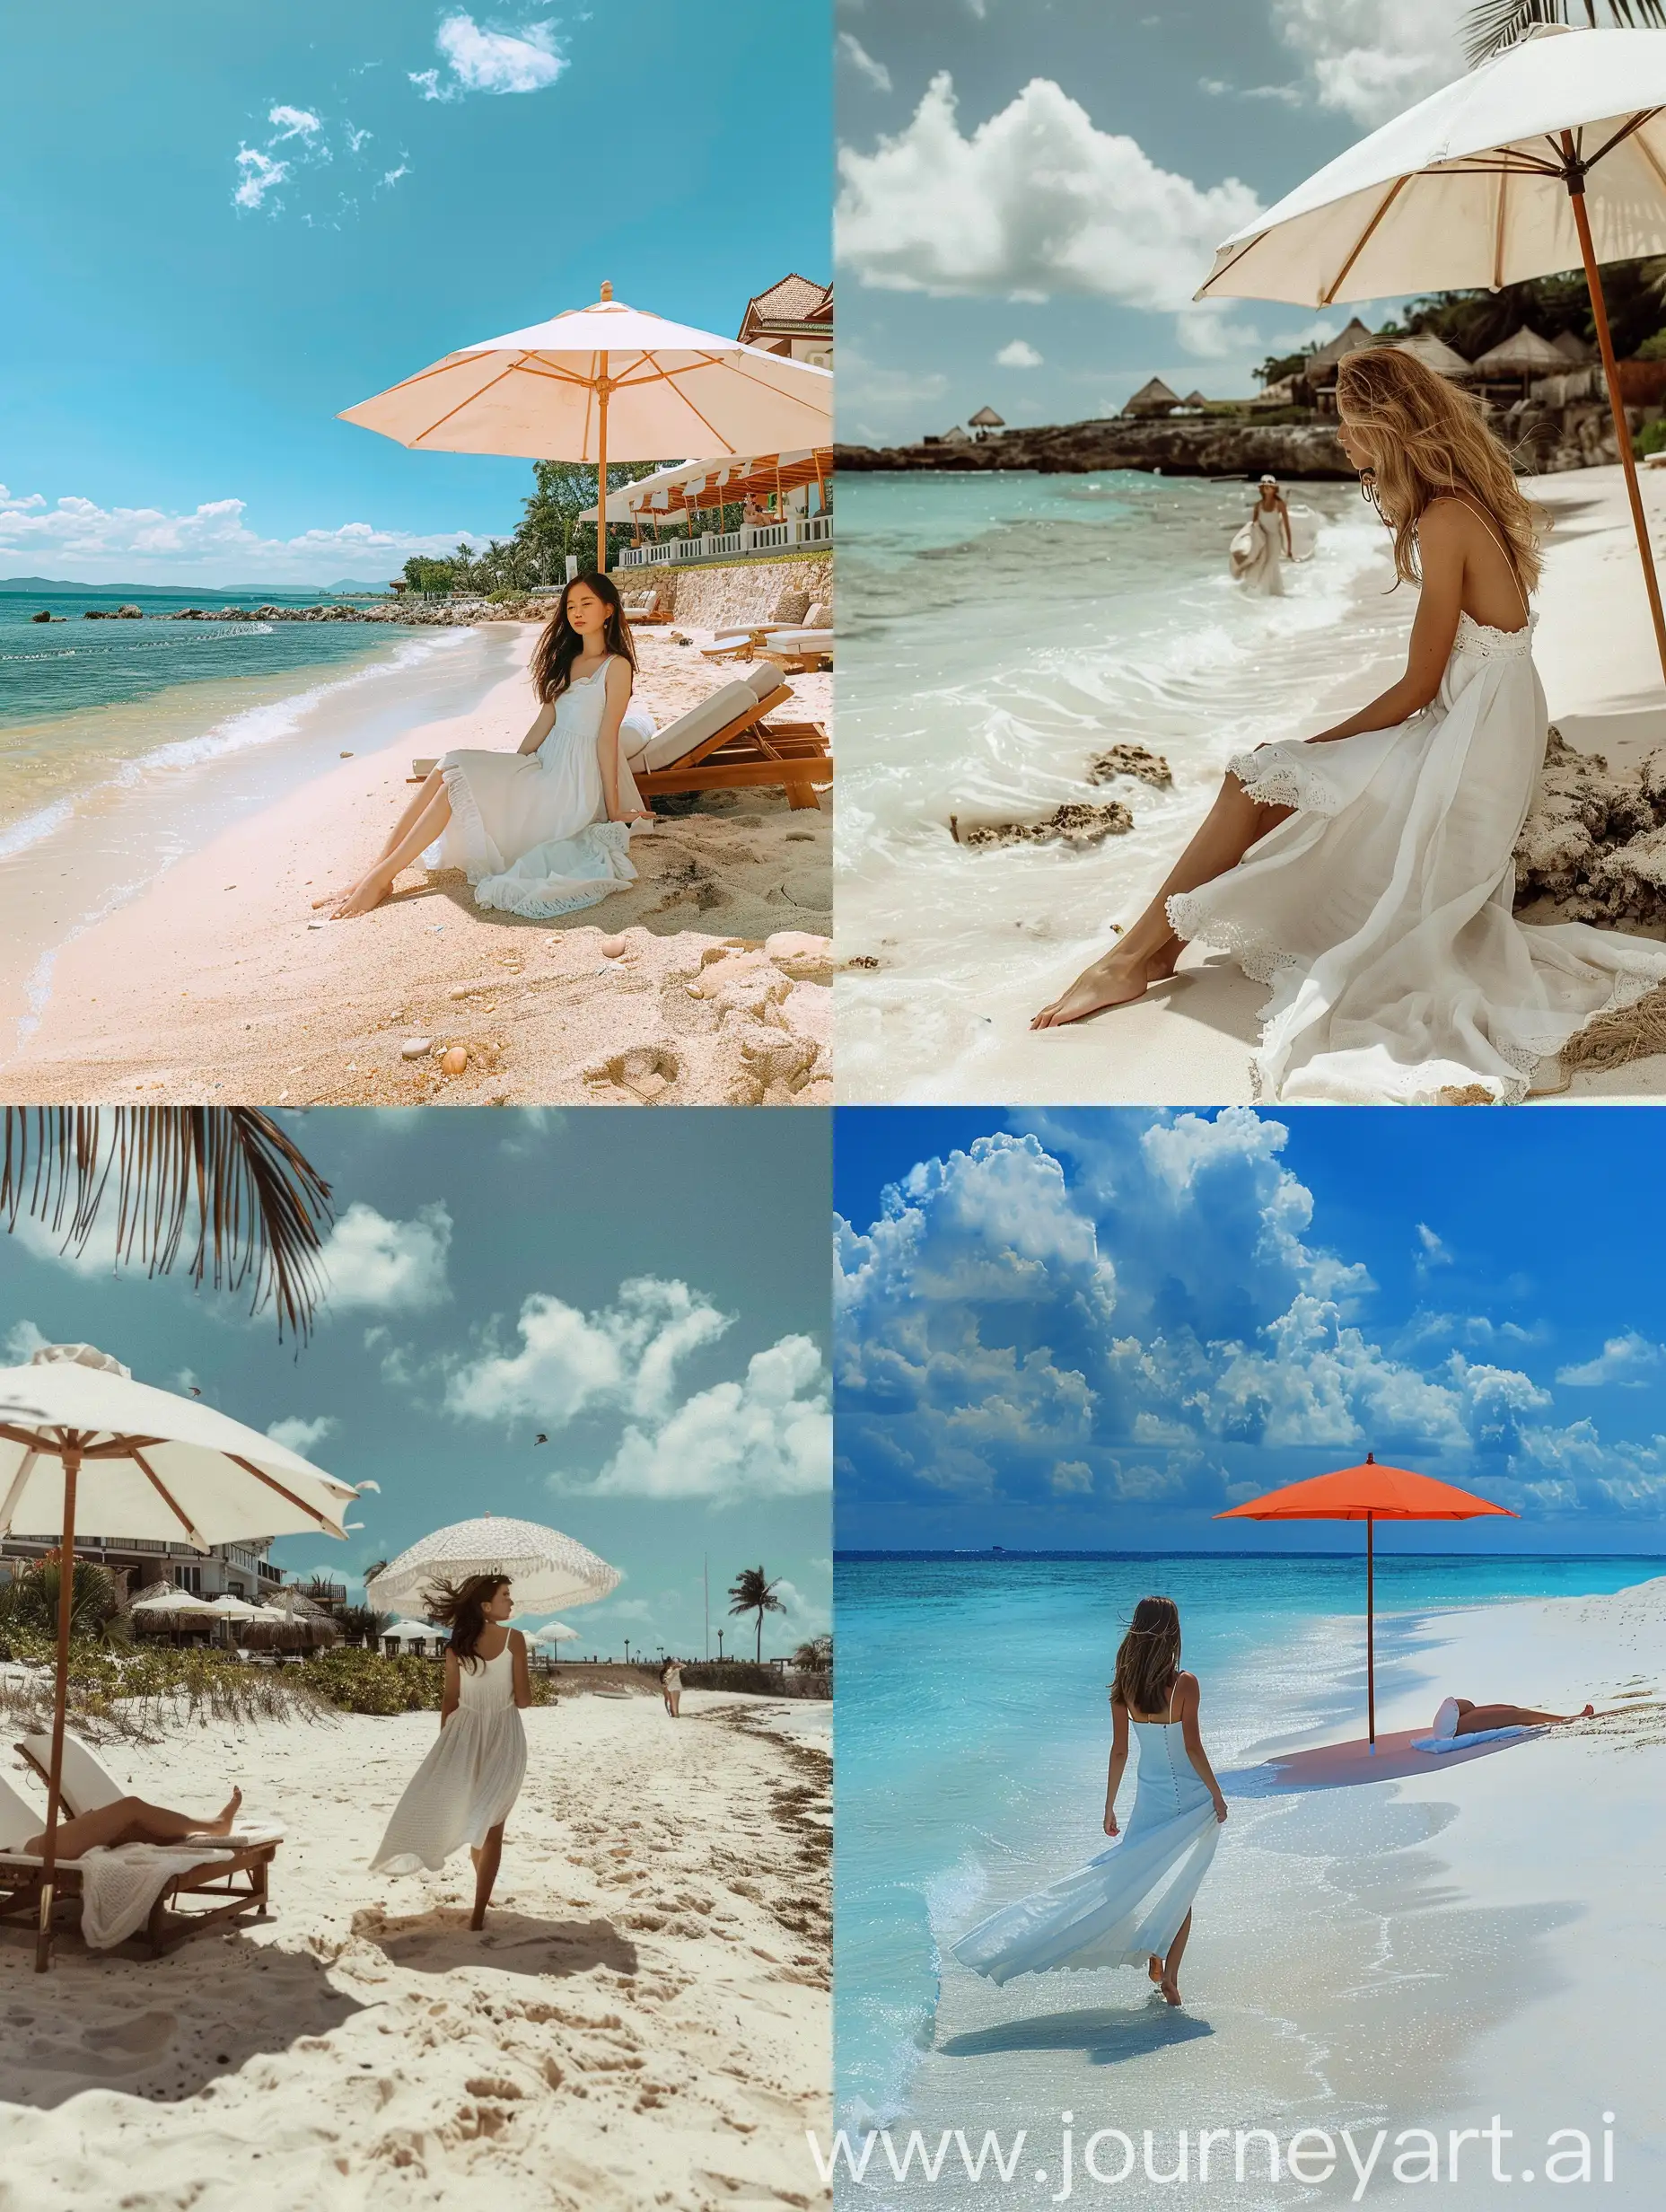 Красивое фото живописного пляжа около отеля, на пляже отдыхает девушка под зонтом или гуляет по пляжу в белом платье